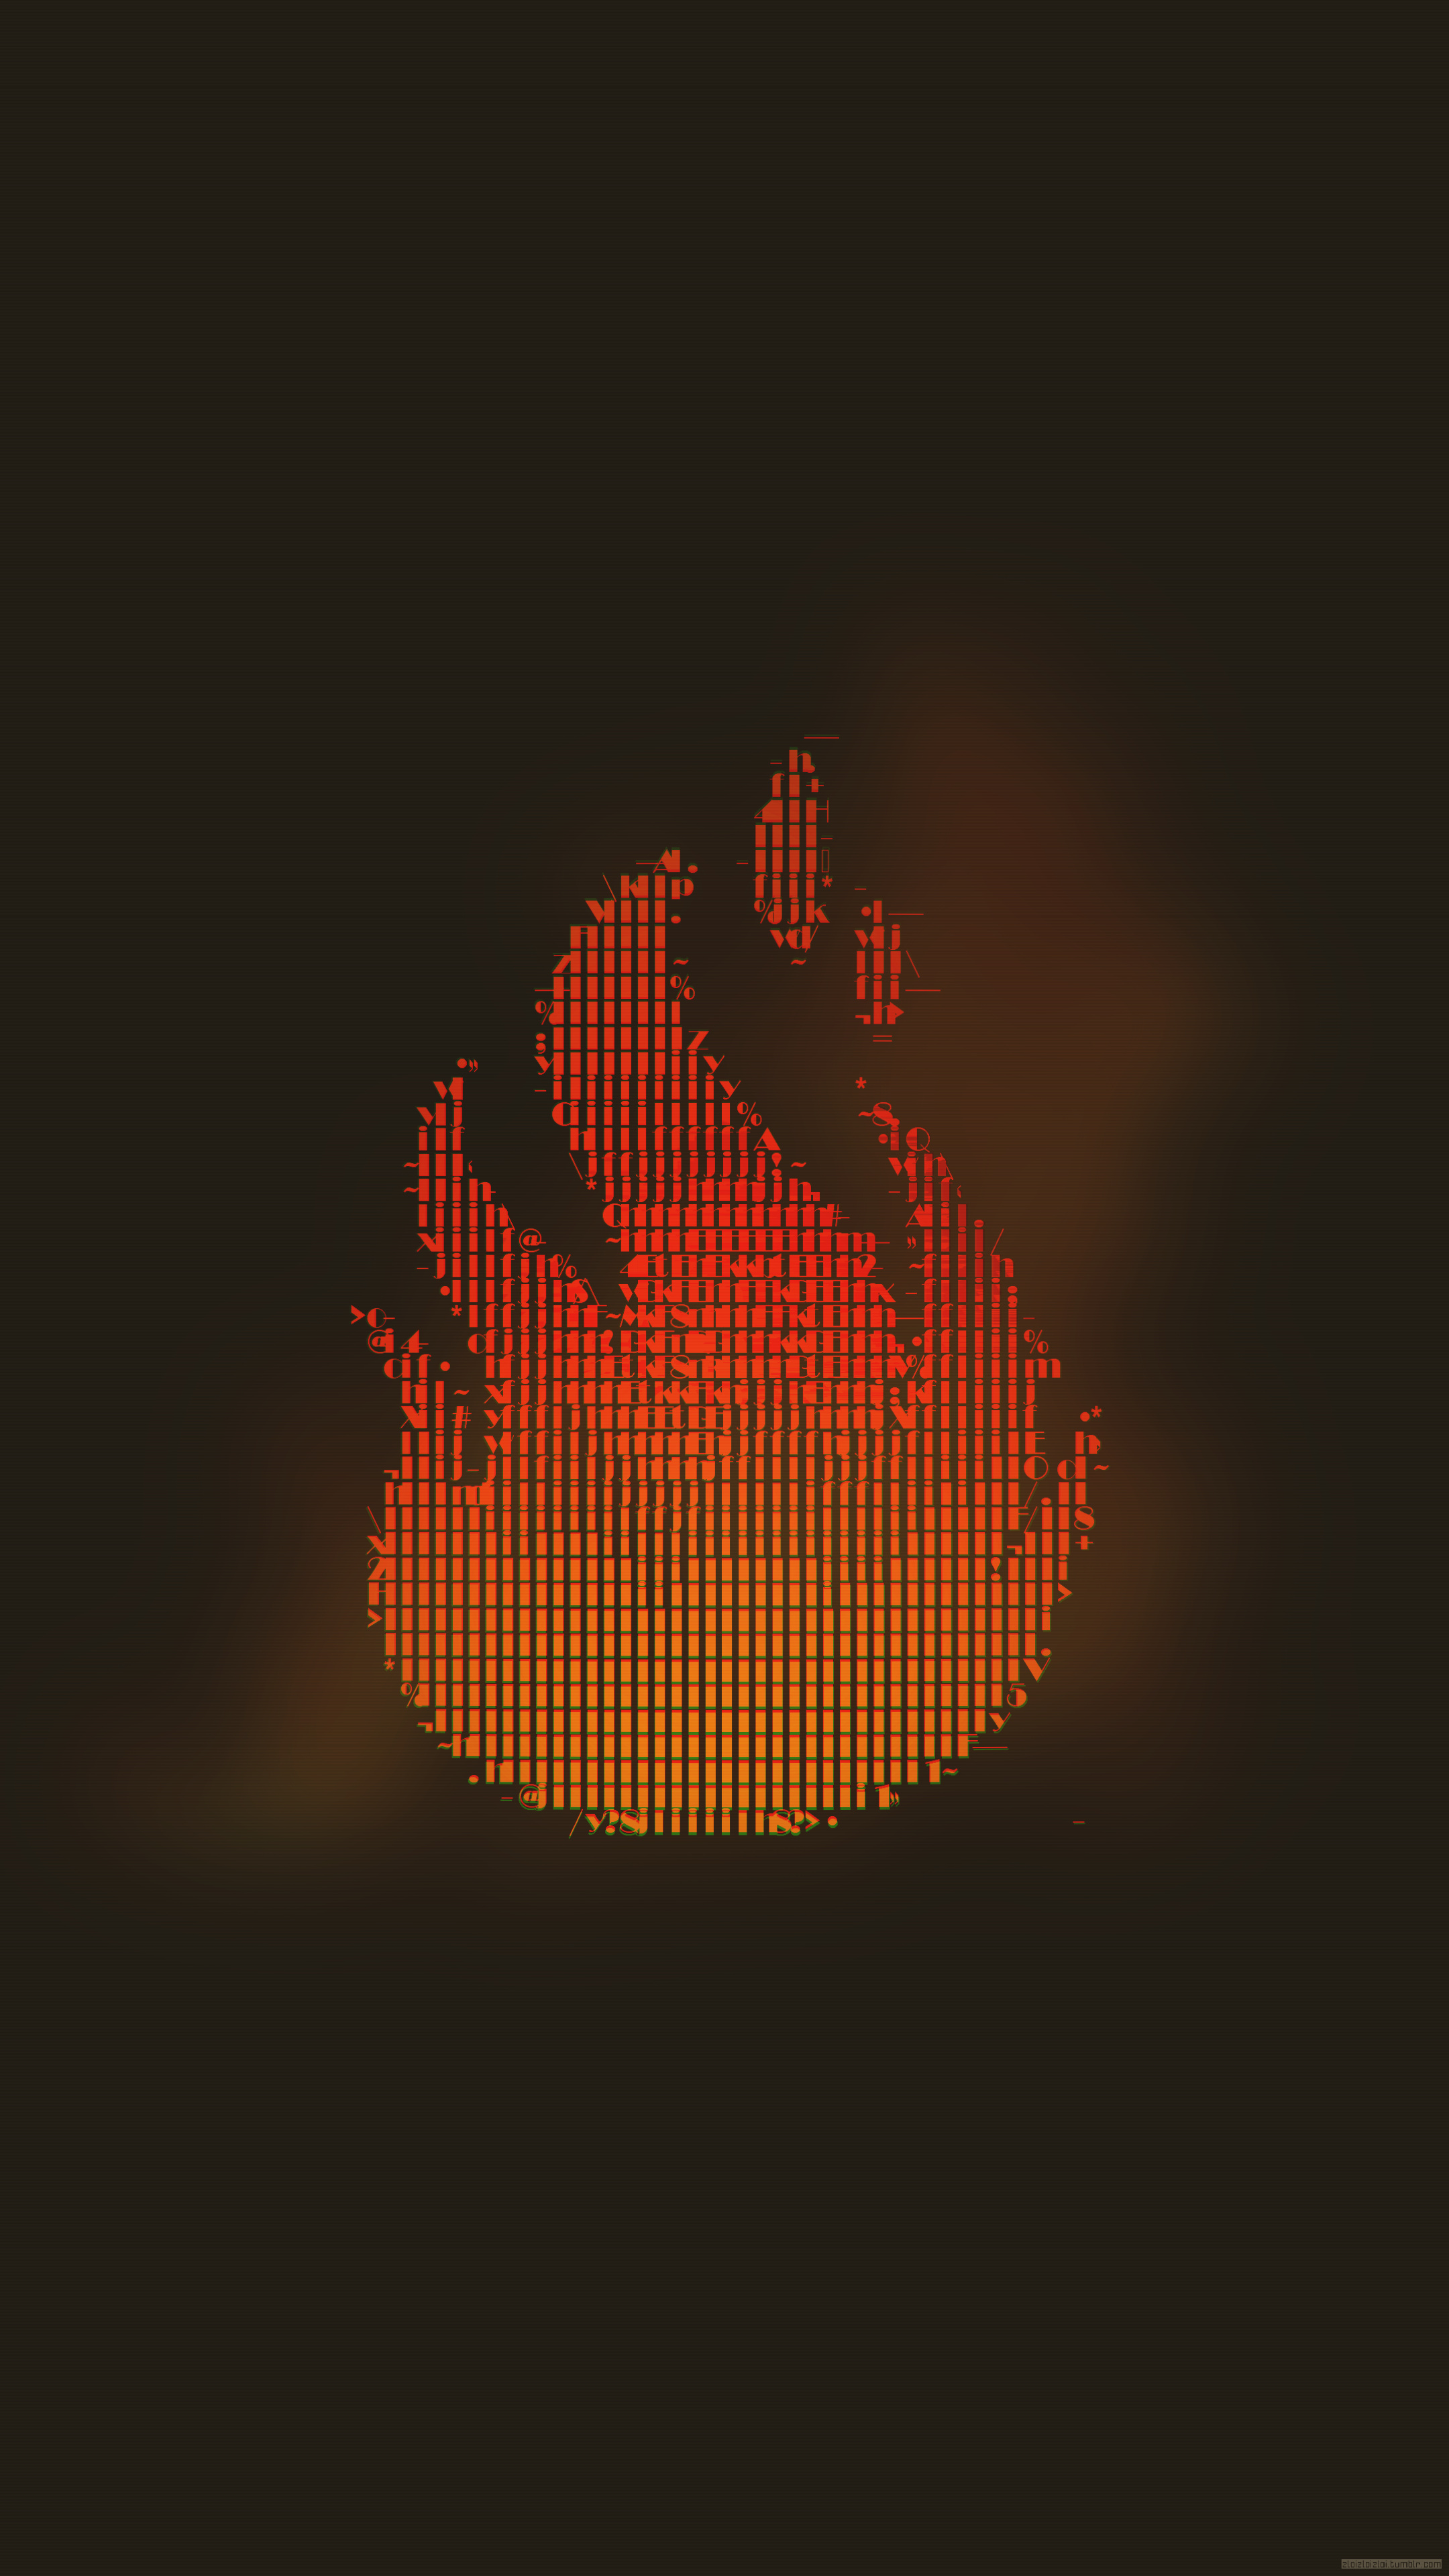 Glitch art fire wallpaper, Abstract fire art, Fire ASCII art, Maxalos HD wallpapers, Unique fire visuals, 2160x3840 4K Handy